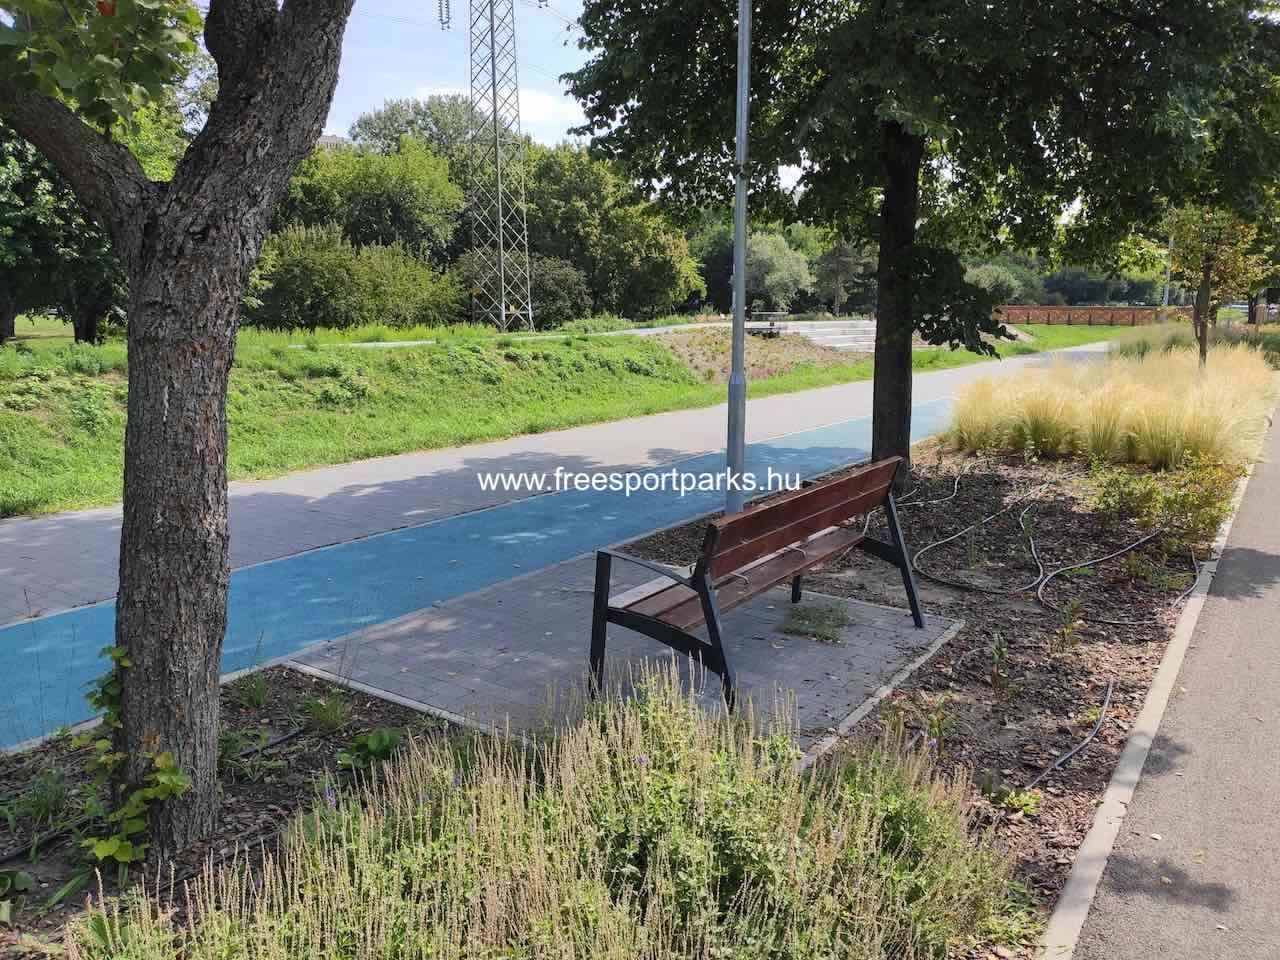 pihenőpad az árnyékban a futópálya mellett - Rákos-patak - Free Sport Parks térkép